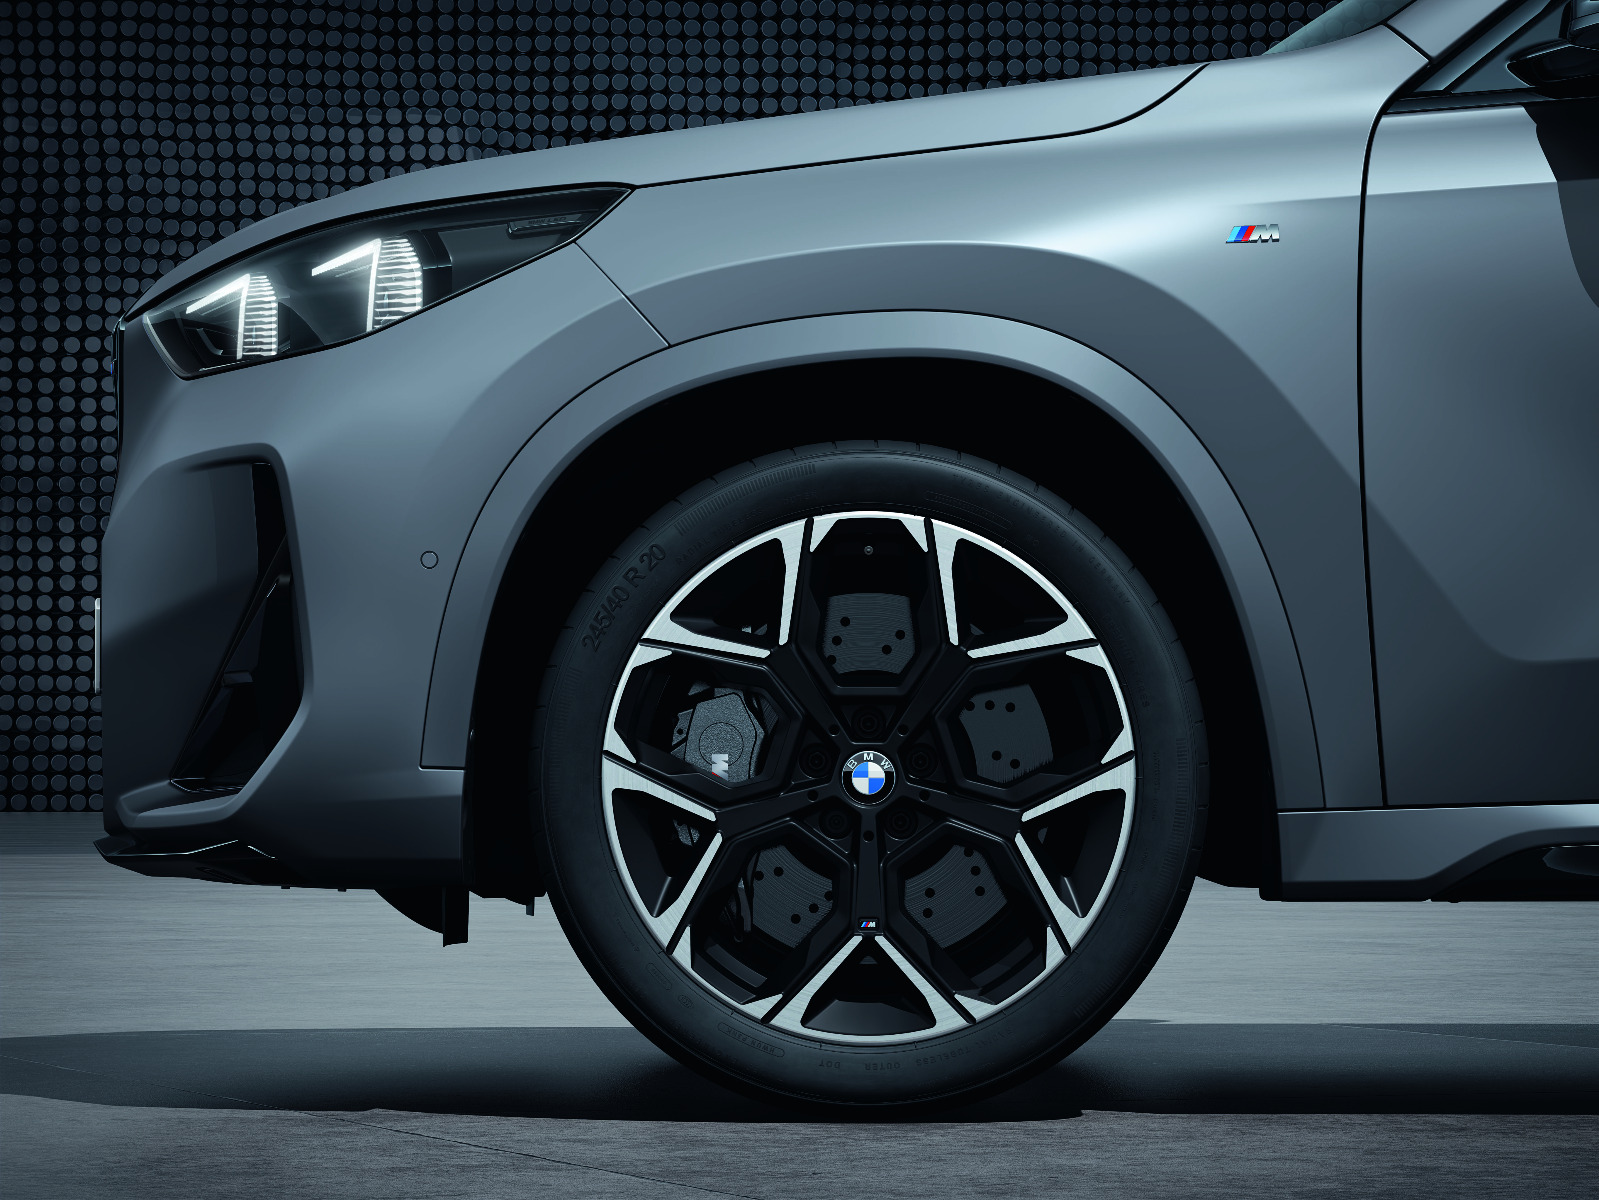 Originální zimní sada BMW X U11 STYLING M872 v rozměrech 8x20 ET20 včetně zimních pneumatik 245/40 R20 99V XL Pirelli P-Zero Winter* a čidel tlaku…